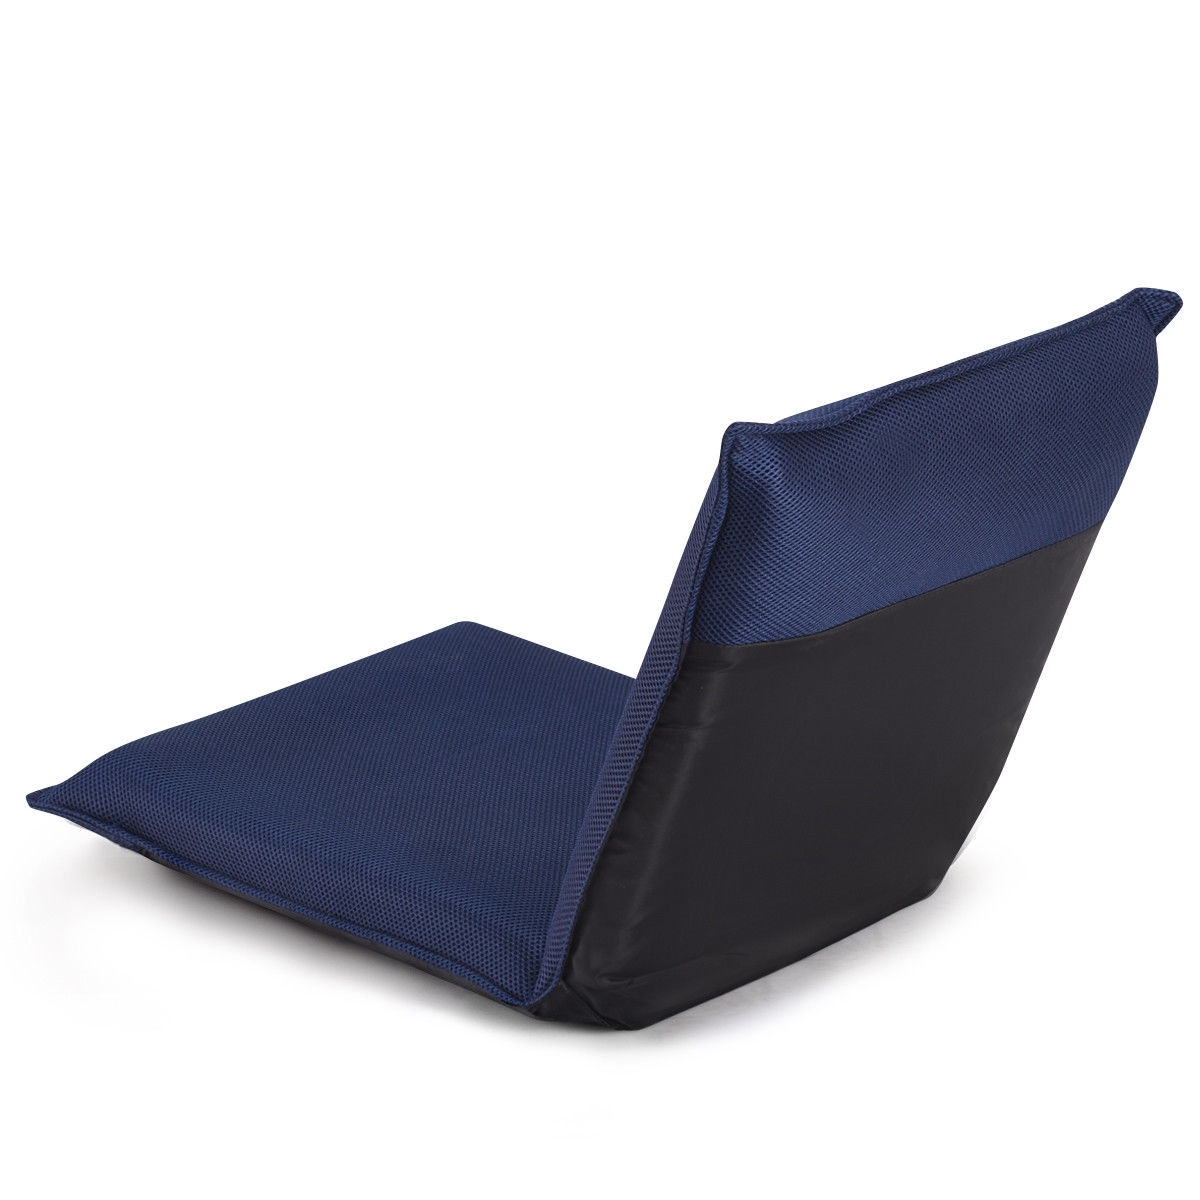 CASAINC Sofa chair Modern Navy Sleeper Chair in the Chairs department ...